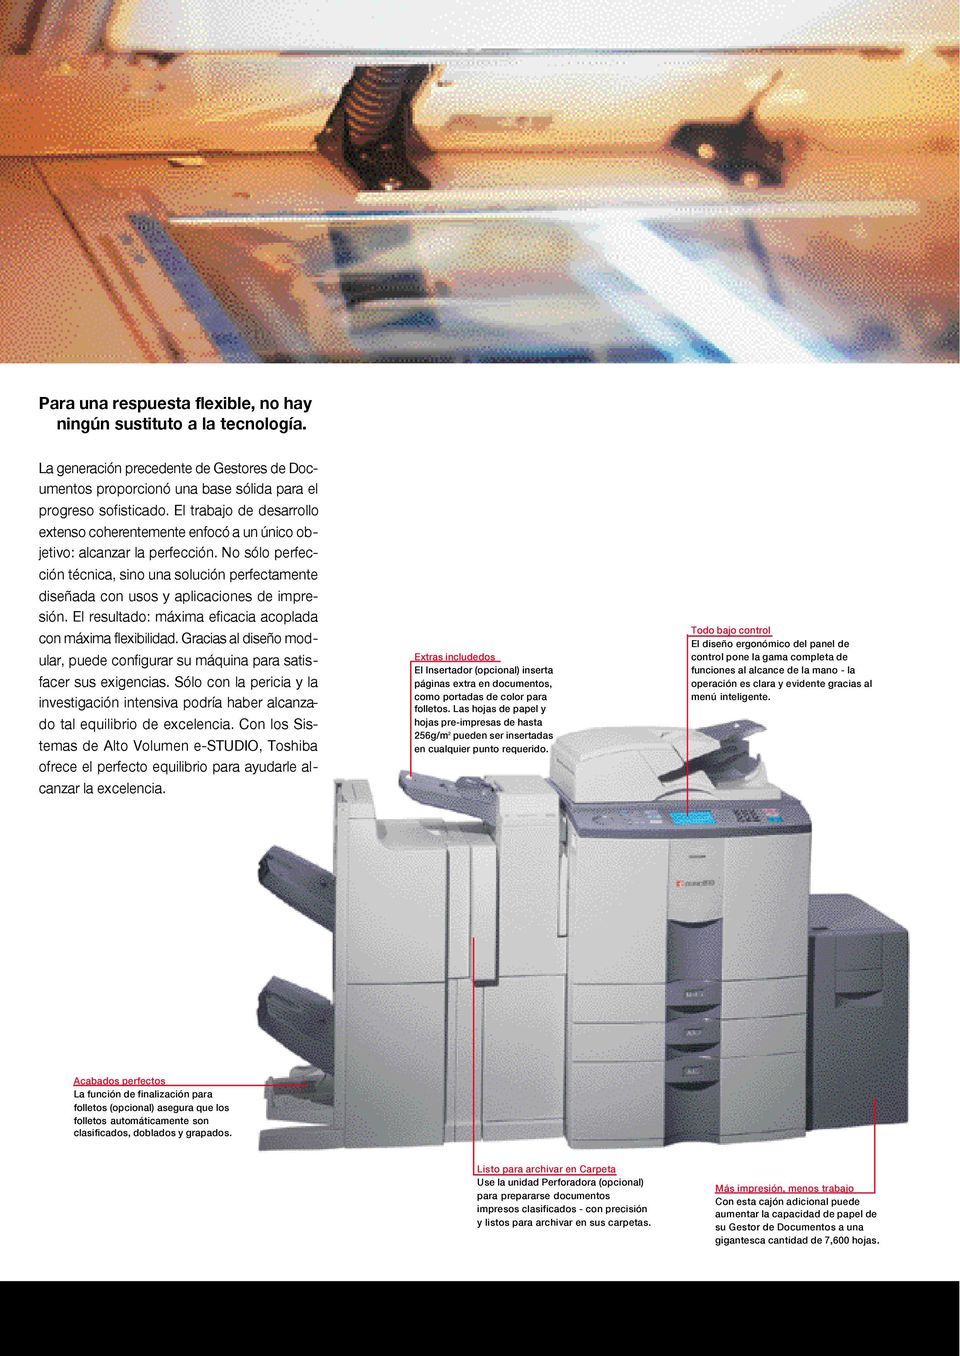 No sólo perfección técnica, sino una solución perfectamente diseñada con usos y aplicaciones de impresión. El resultado: máxima eficacia acoplada con máxima flexibilidad.